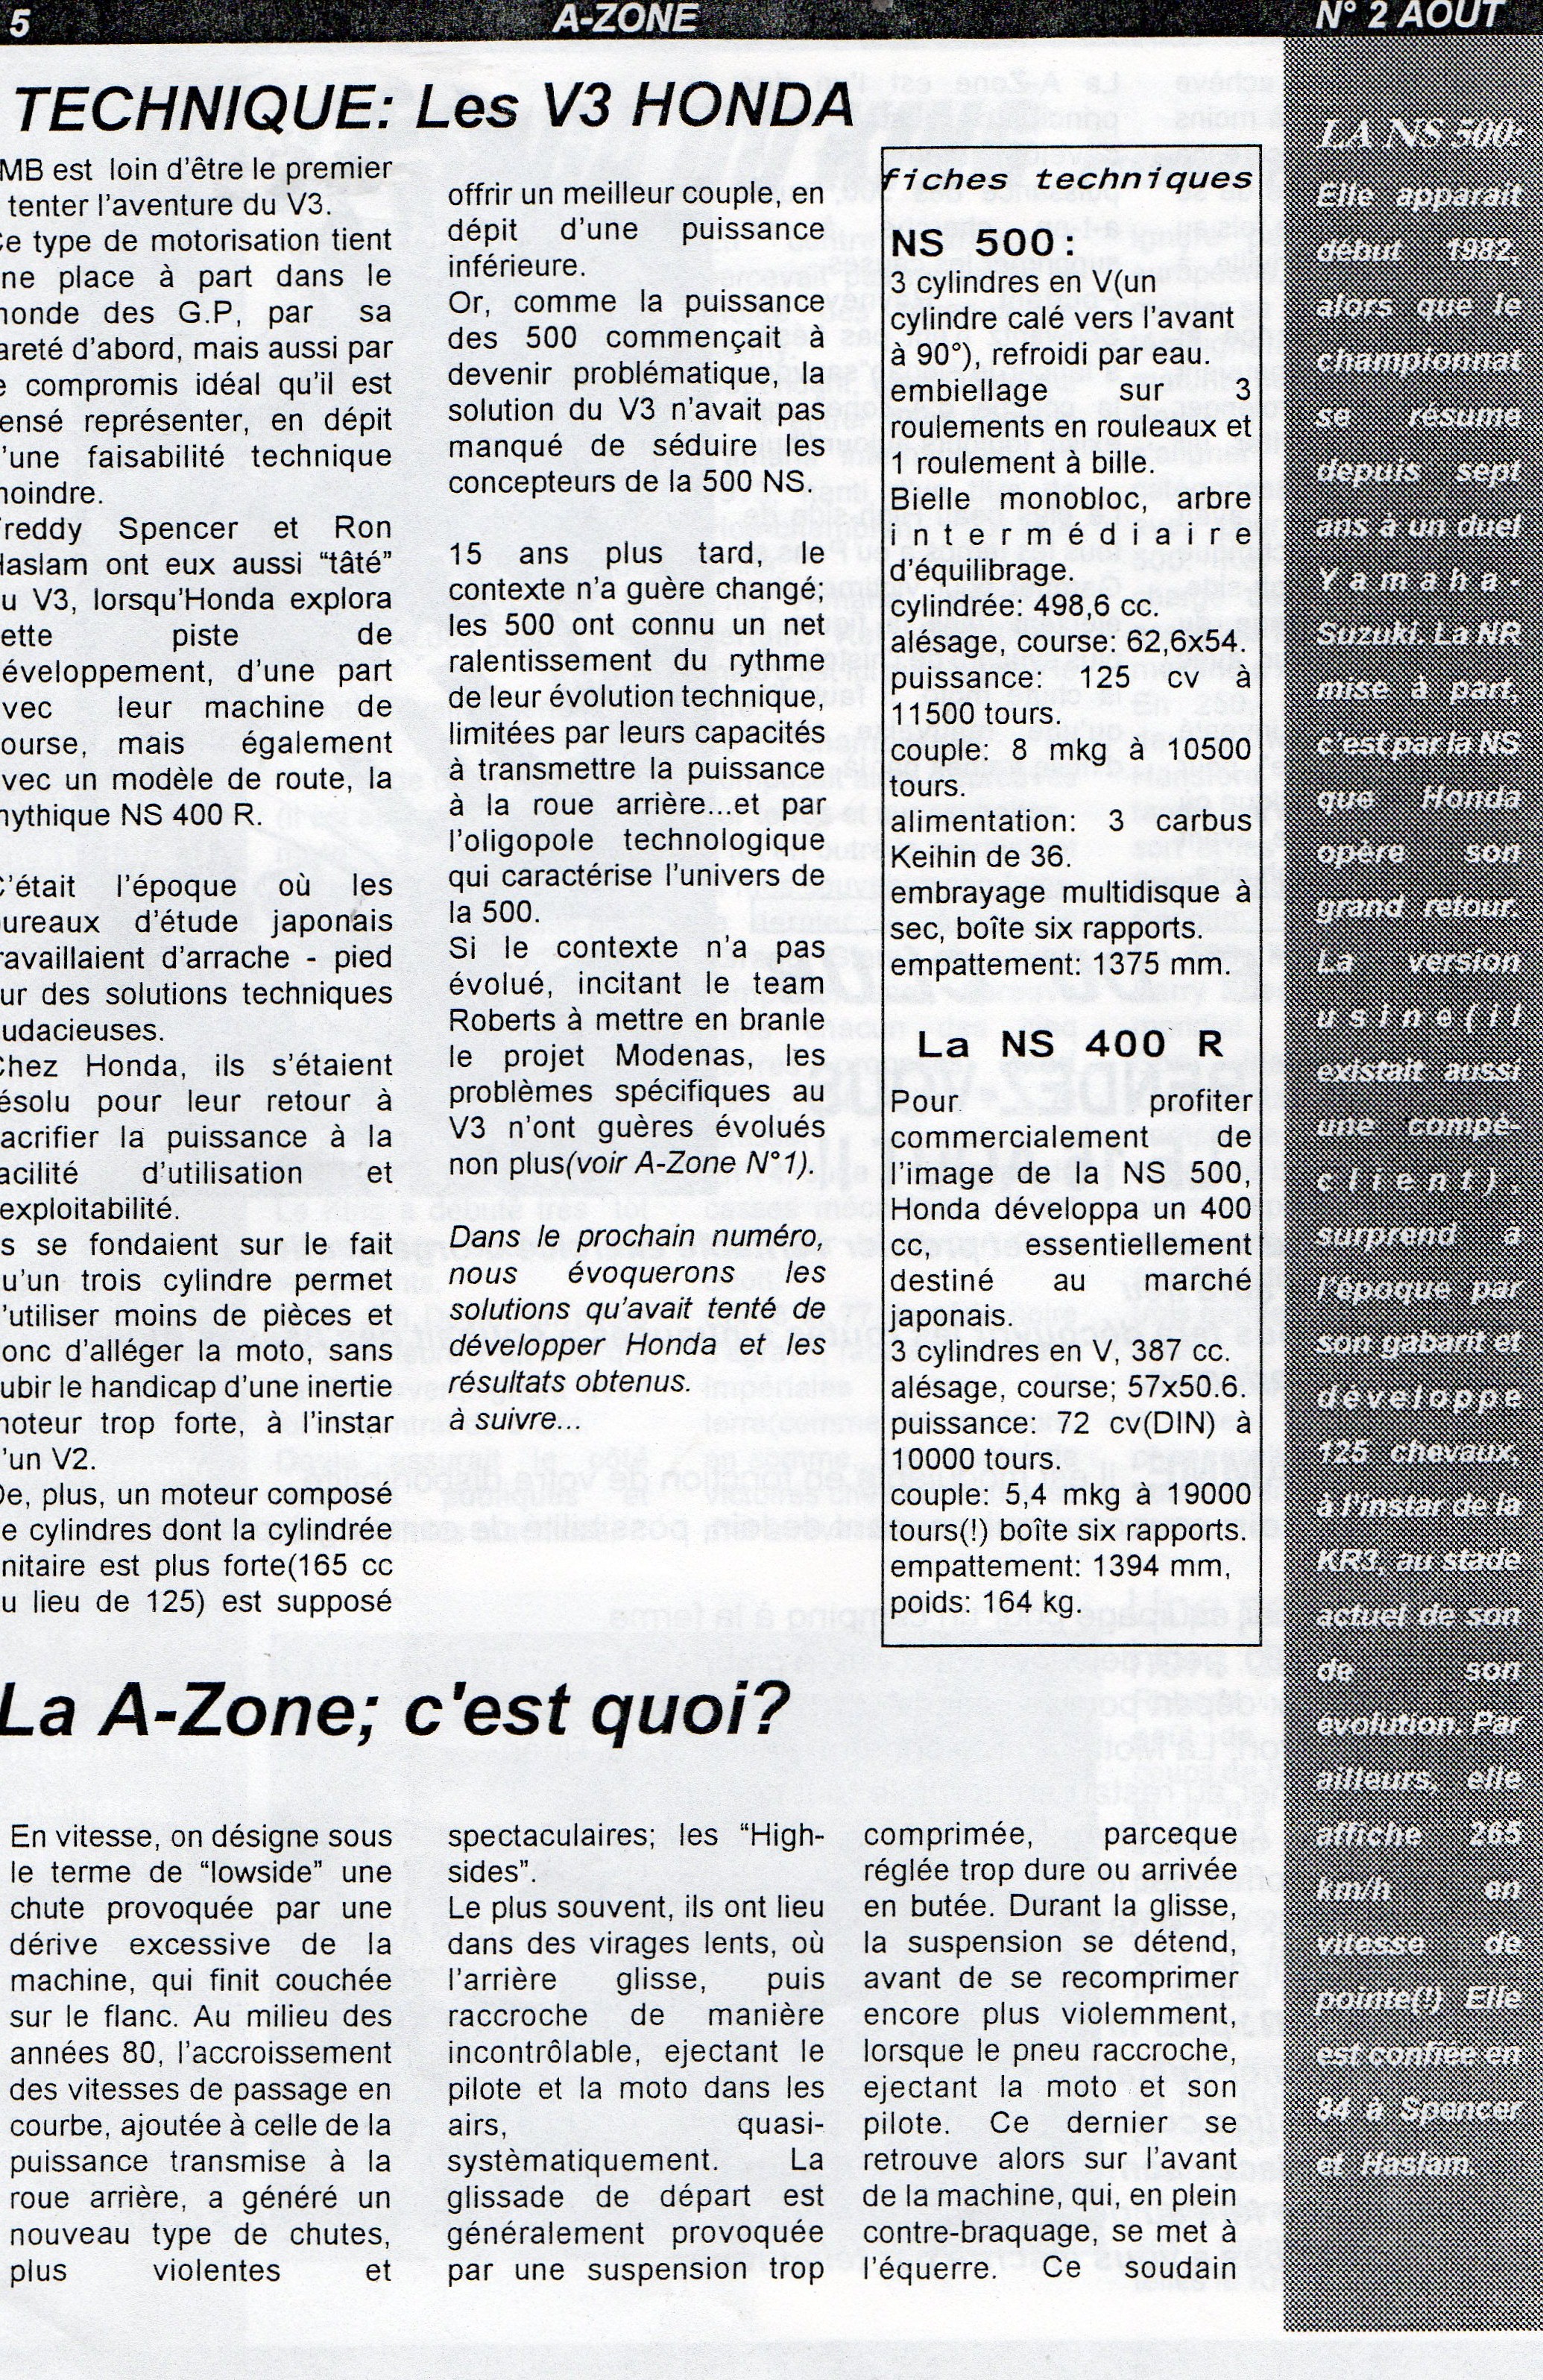 La page 5 du A zone d'Août 1997